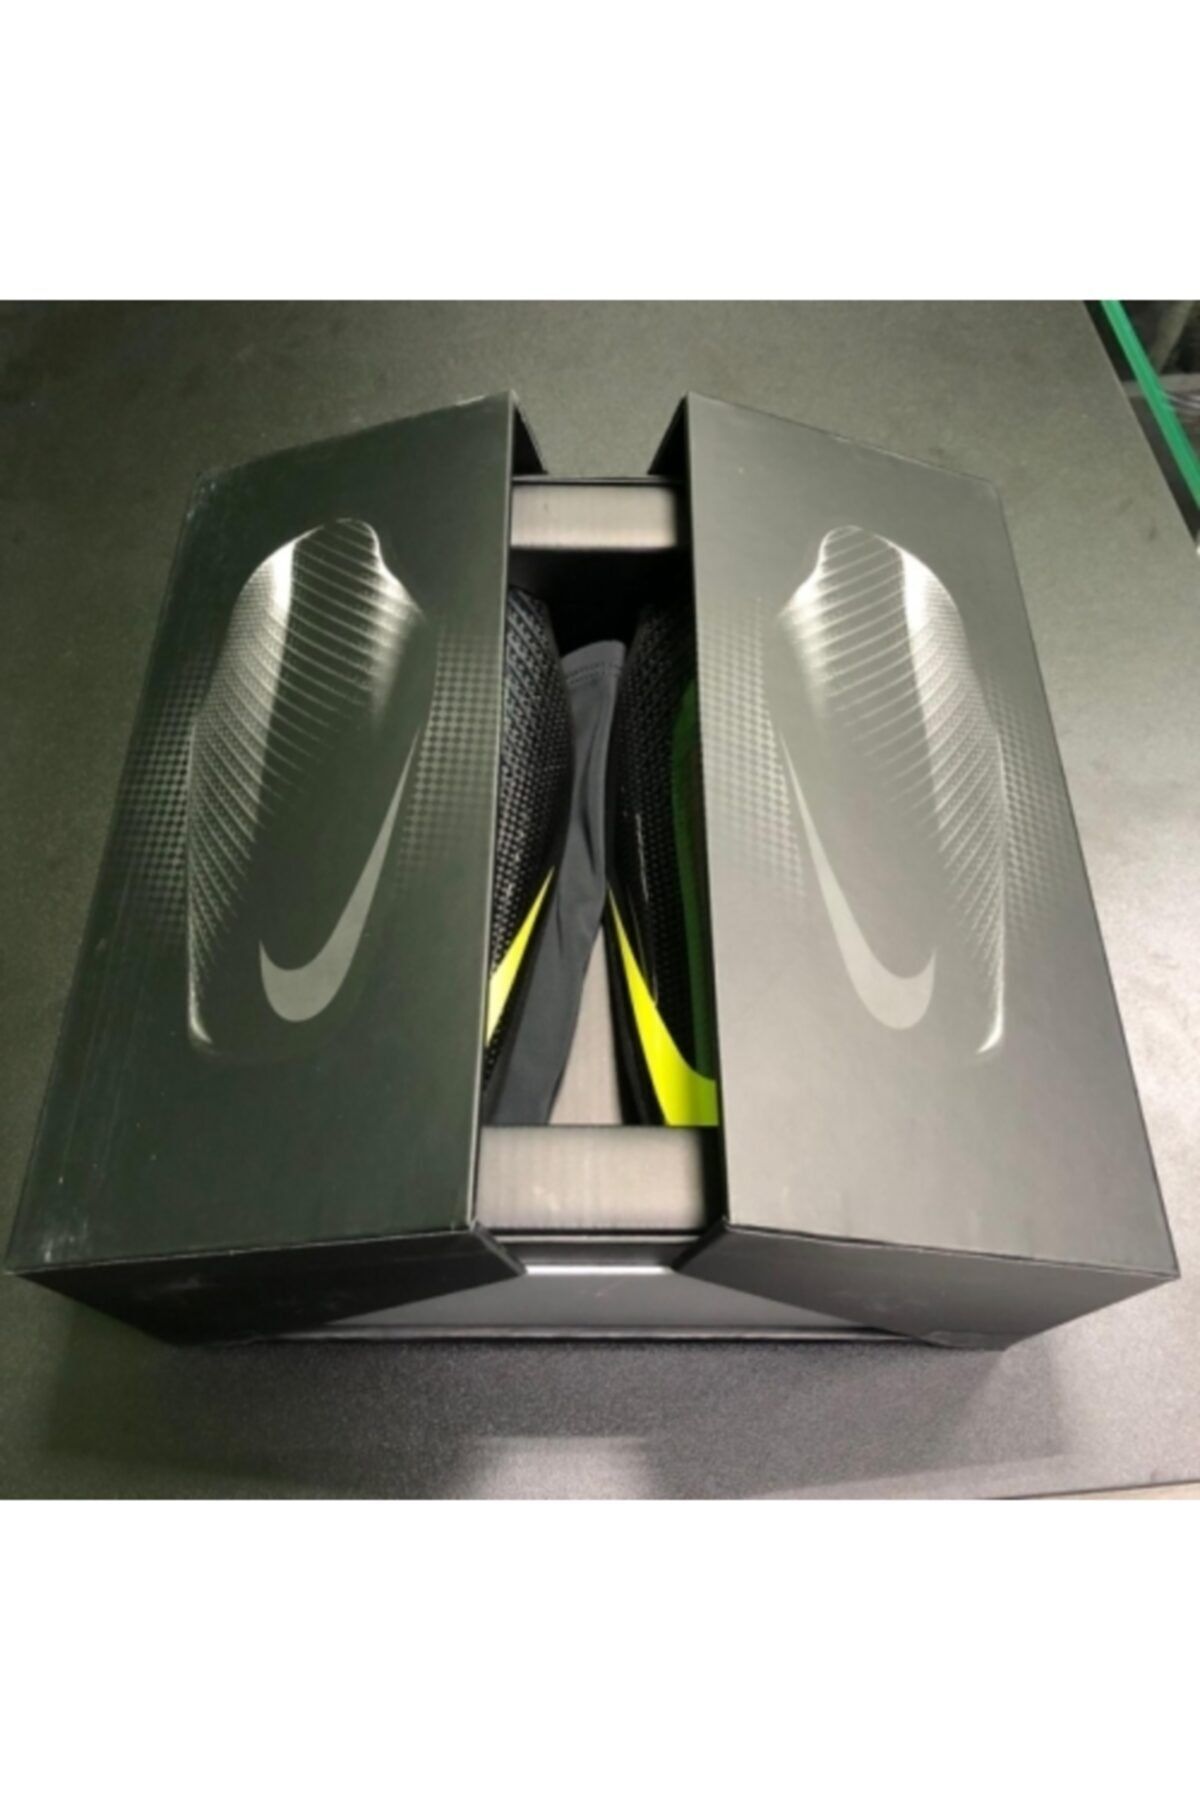 Pantano Repegar Tender Nike Protegga Carbonite Profesyonel Tekmelik Sp2108 010 Fiyatı, Yorumları -  TRENDYOL